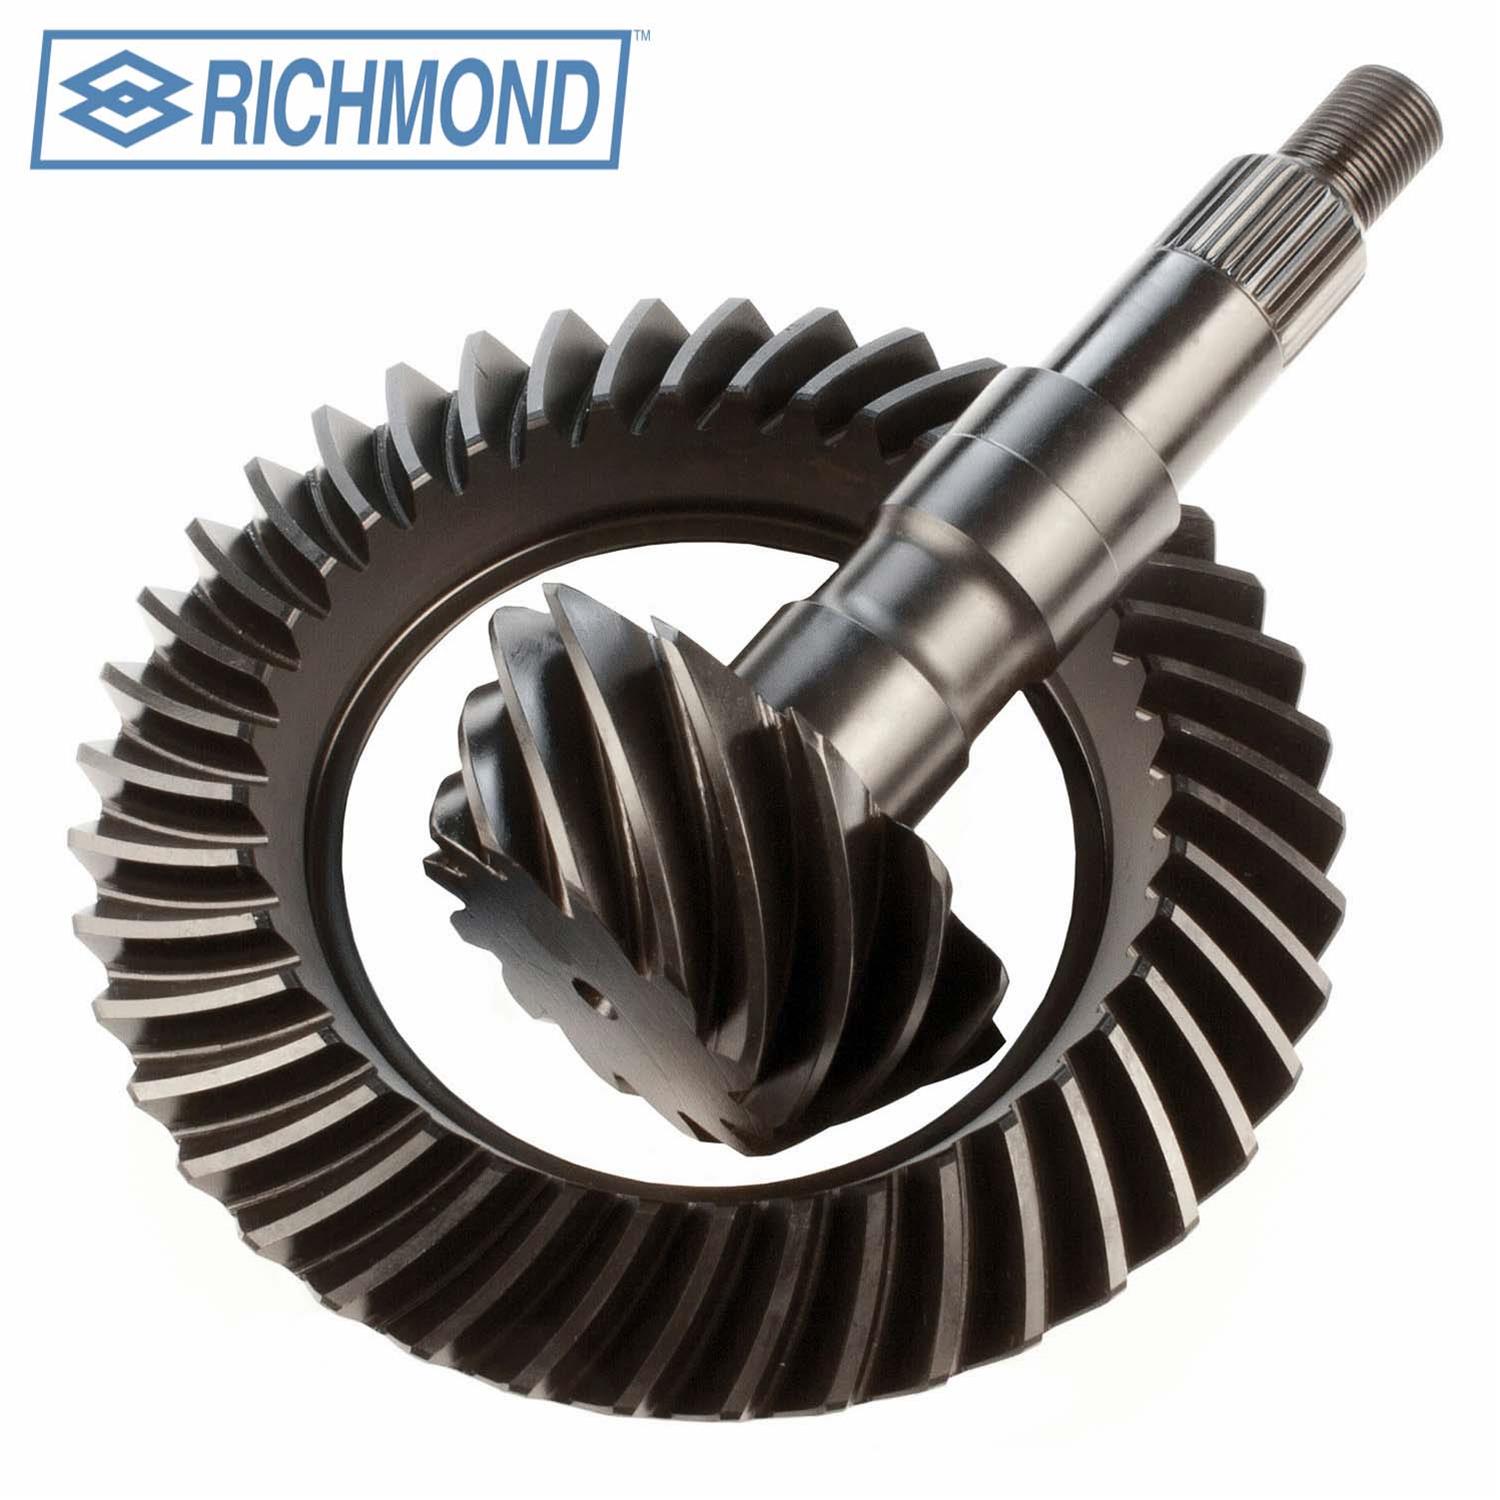 Richmond 55-0001-1 Gear Marking Compound